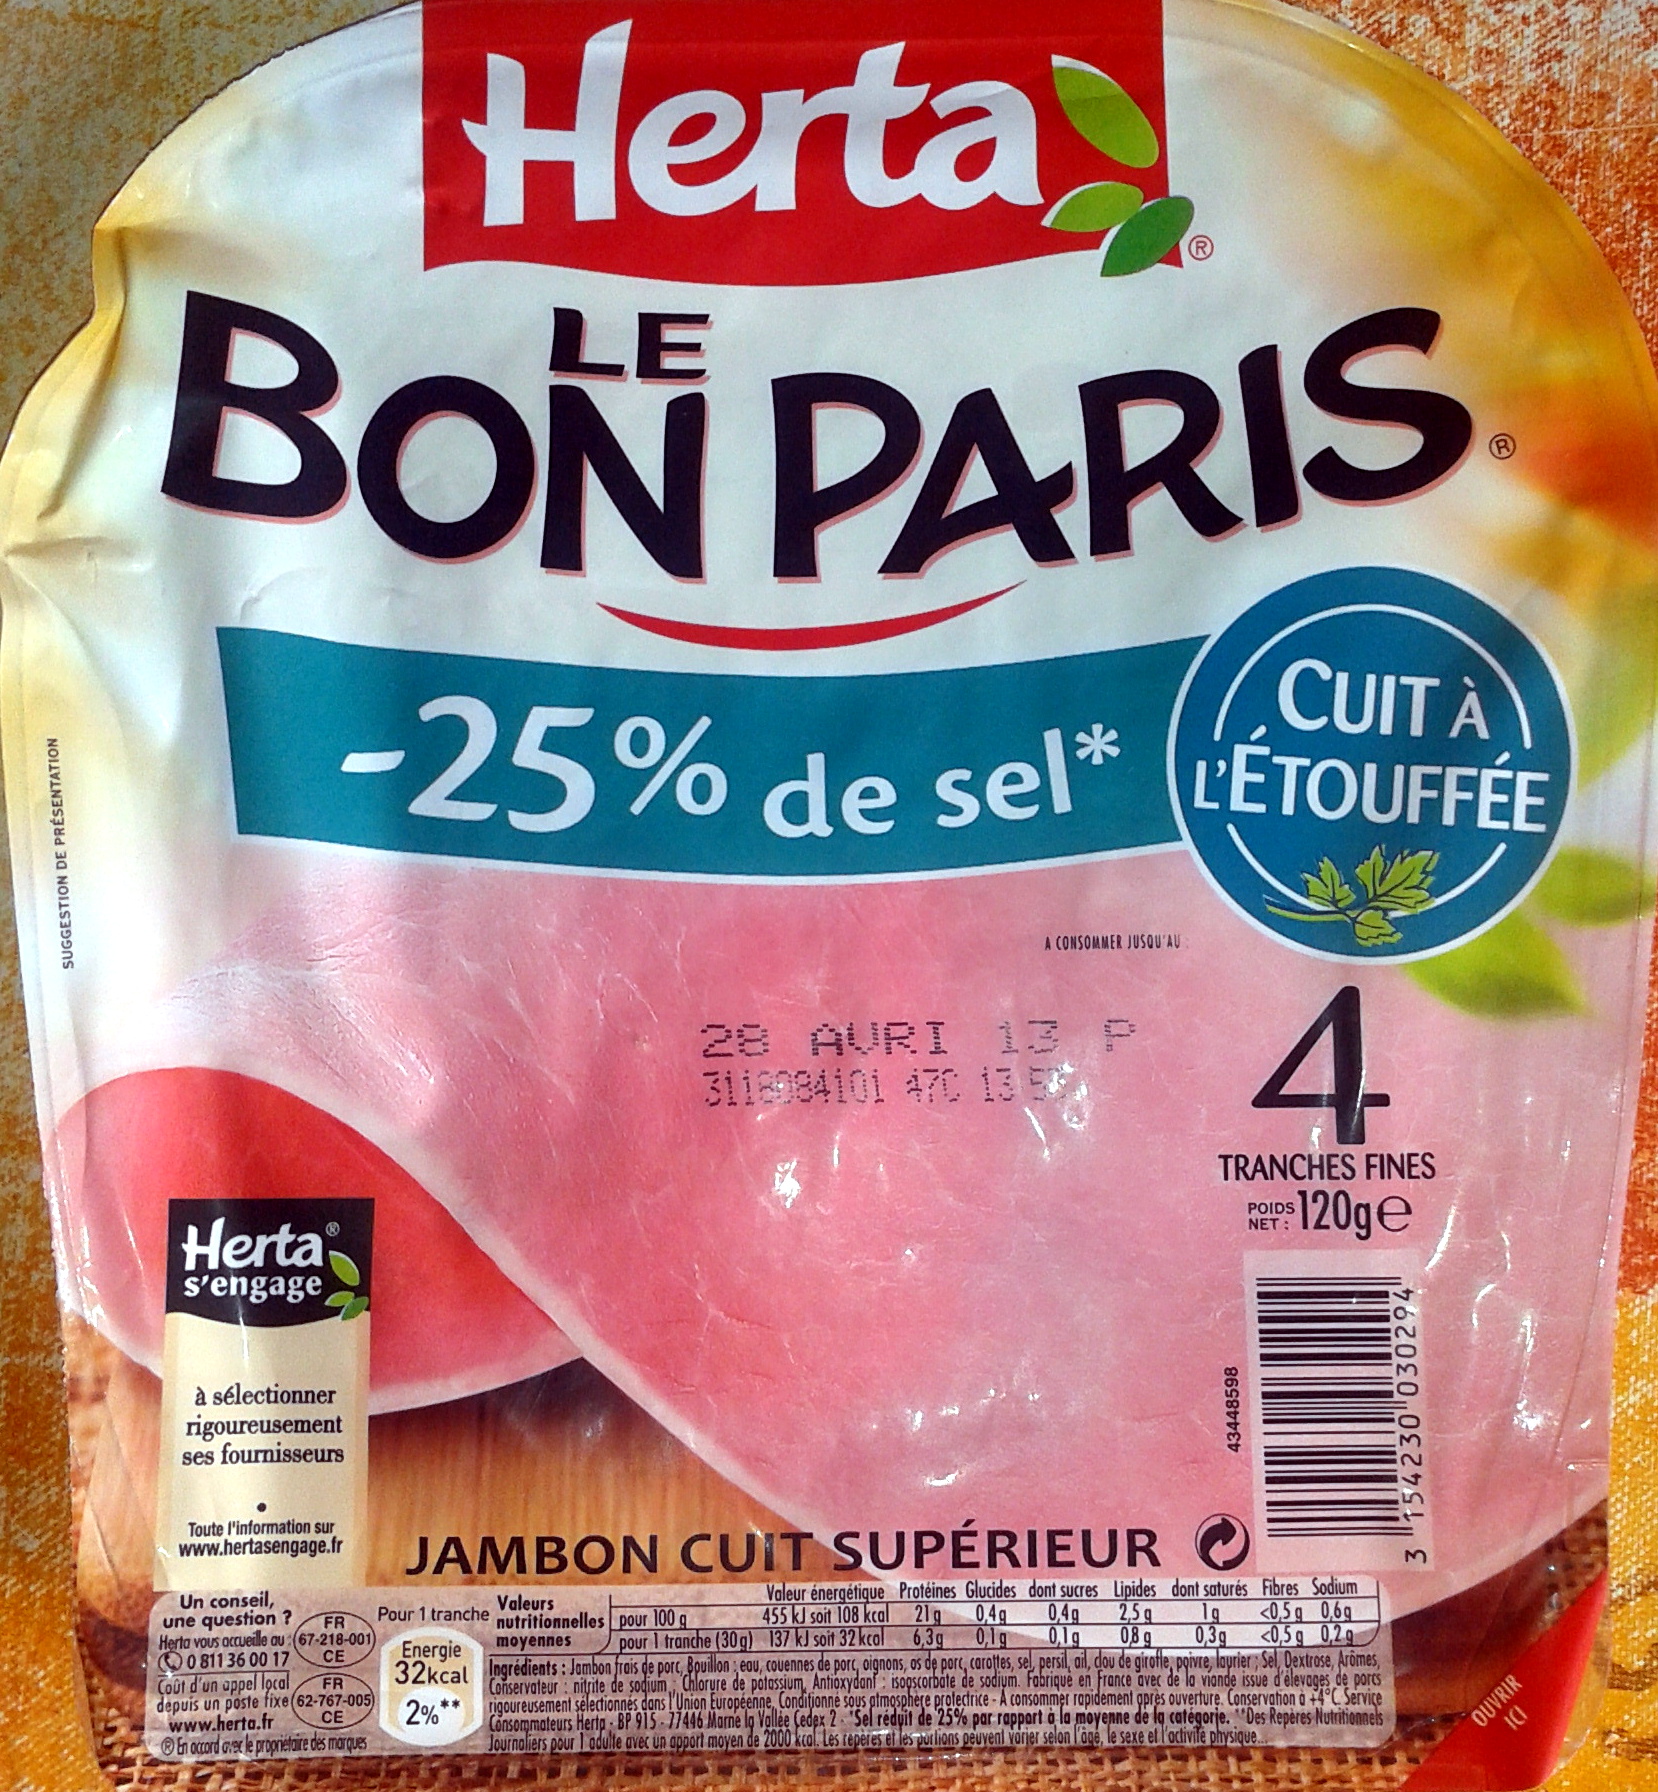 Le Bon Paris - Jambon cuit à l'étouffée - Product - fr